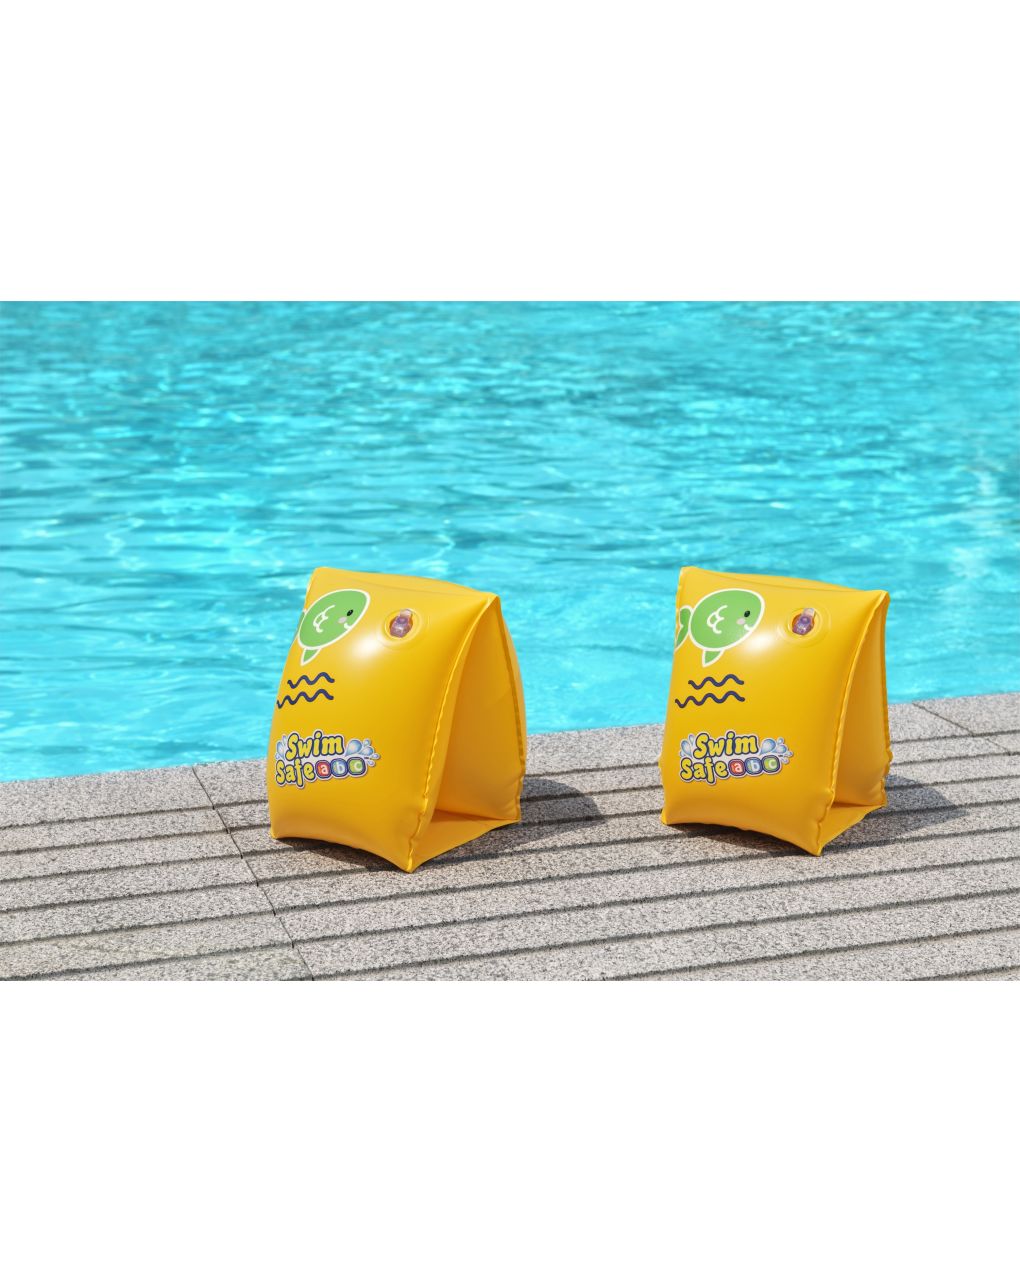 Braccioli swim safe abc step c 25x15 cm - taglia 3/6 anni - bestway